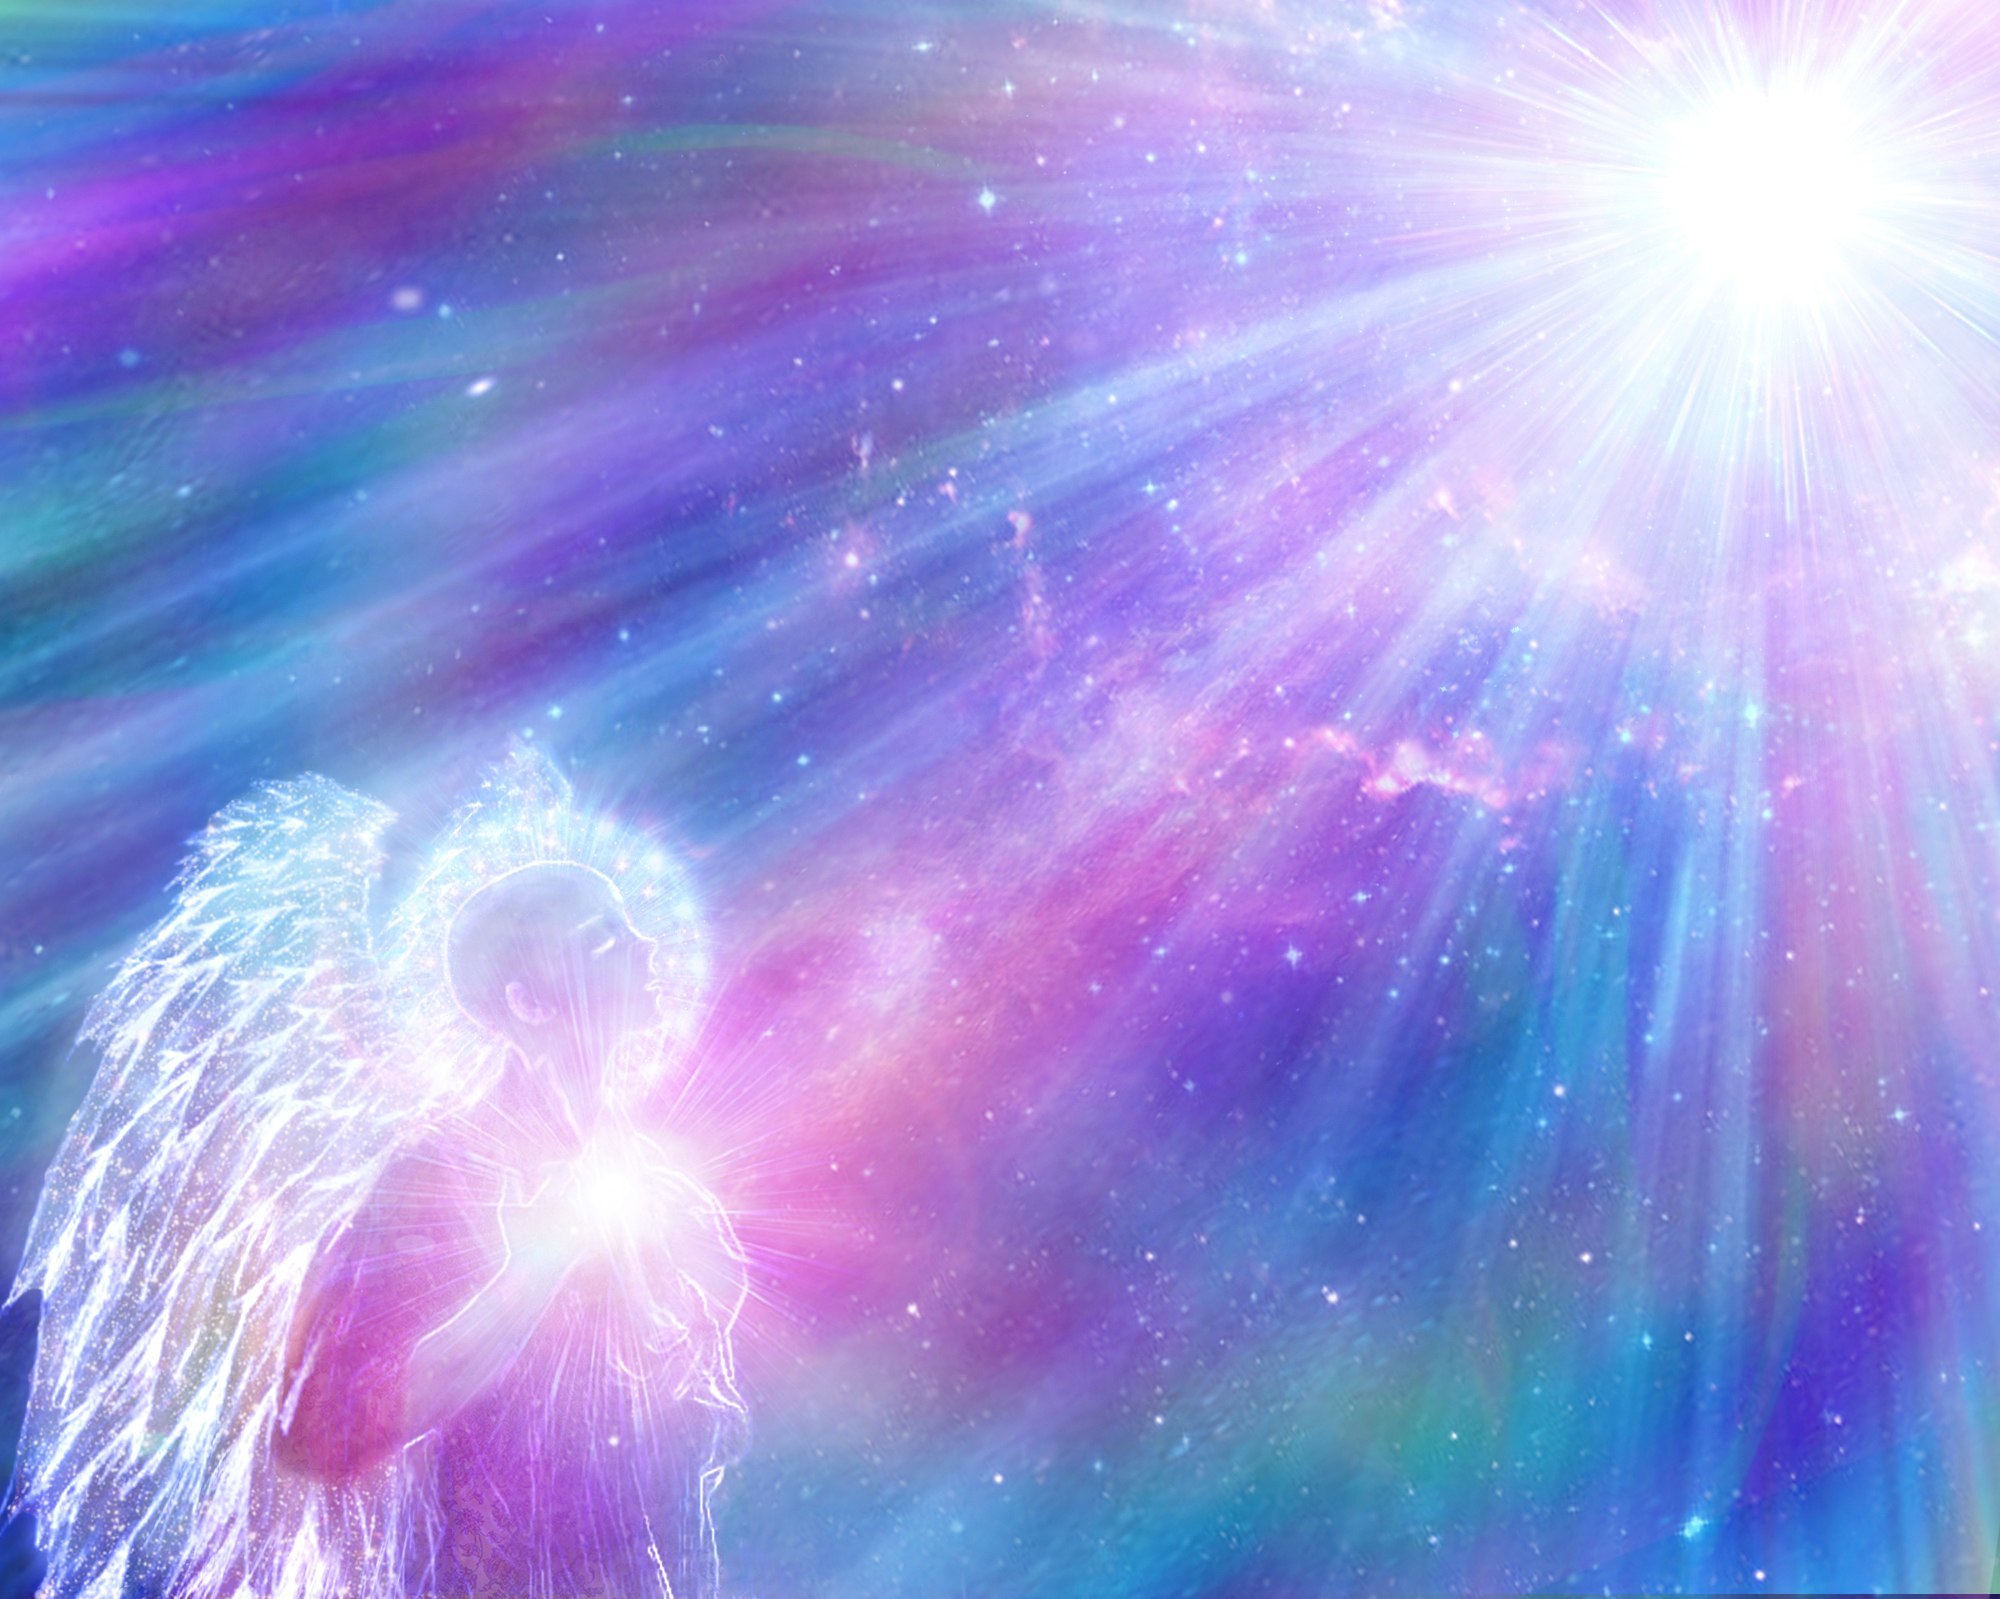 Божественно красивая картинка. Божественный свет. Светлая душа. Свет души. Небесные ангелы.